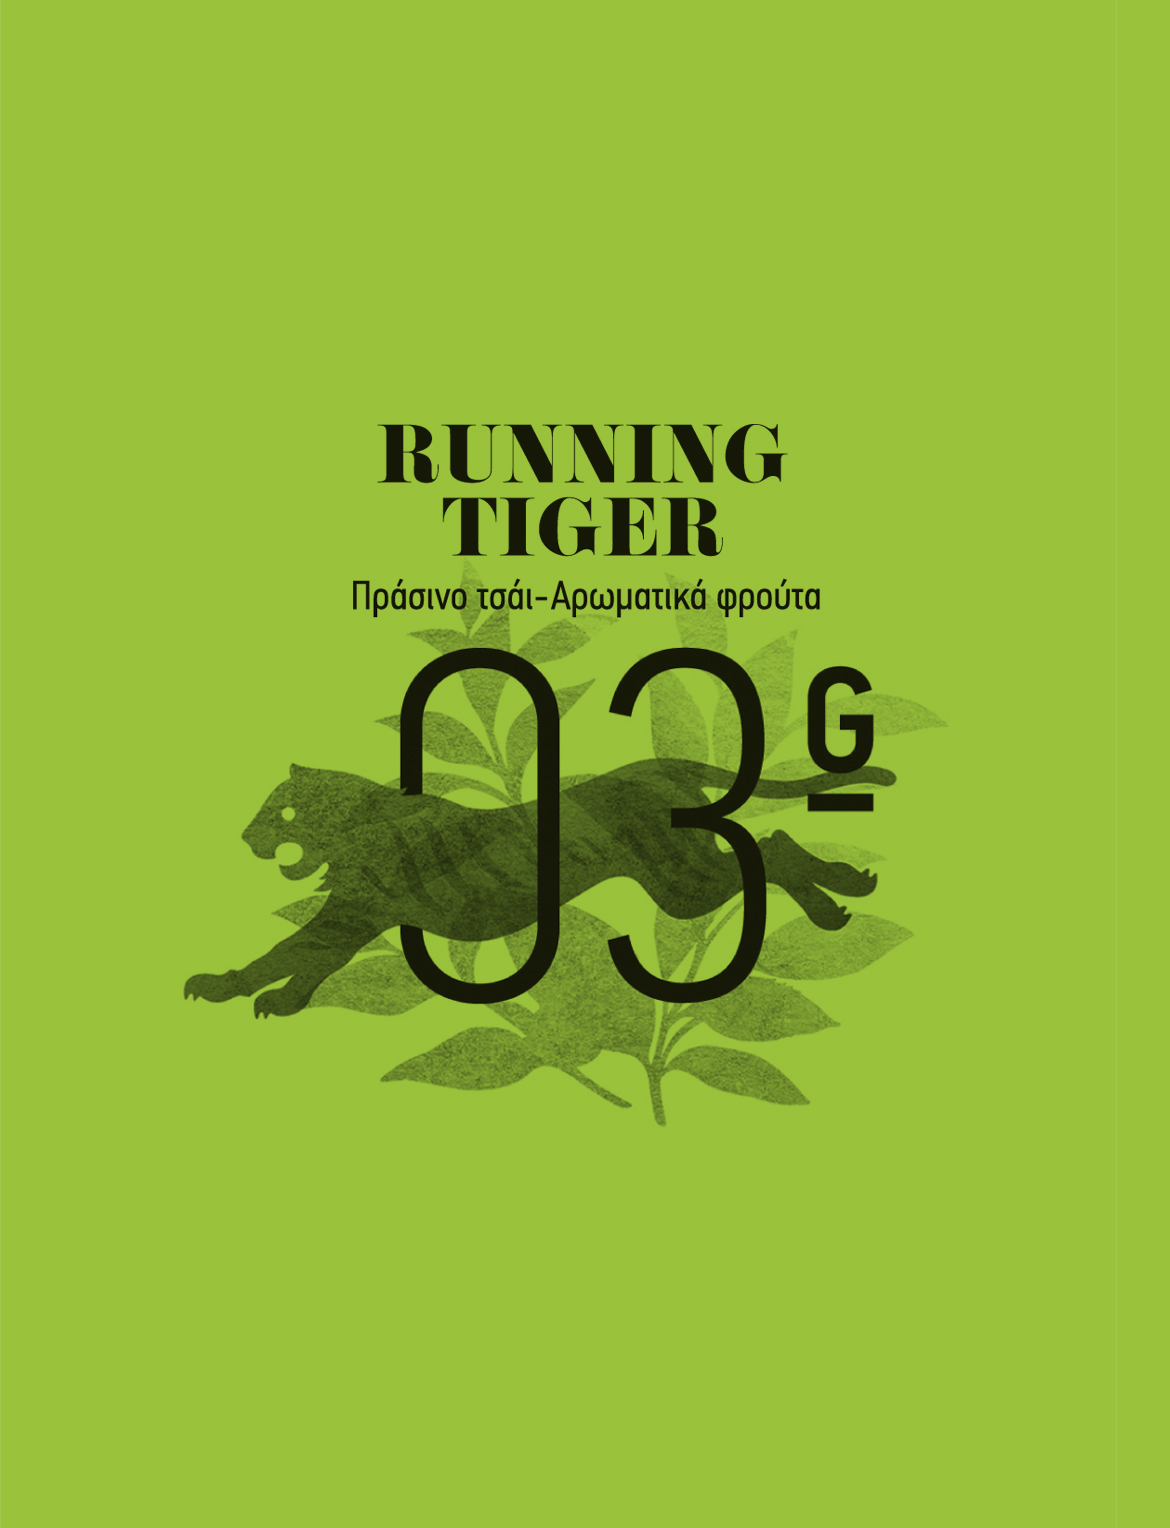 Cretea running tiger illustration